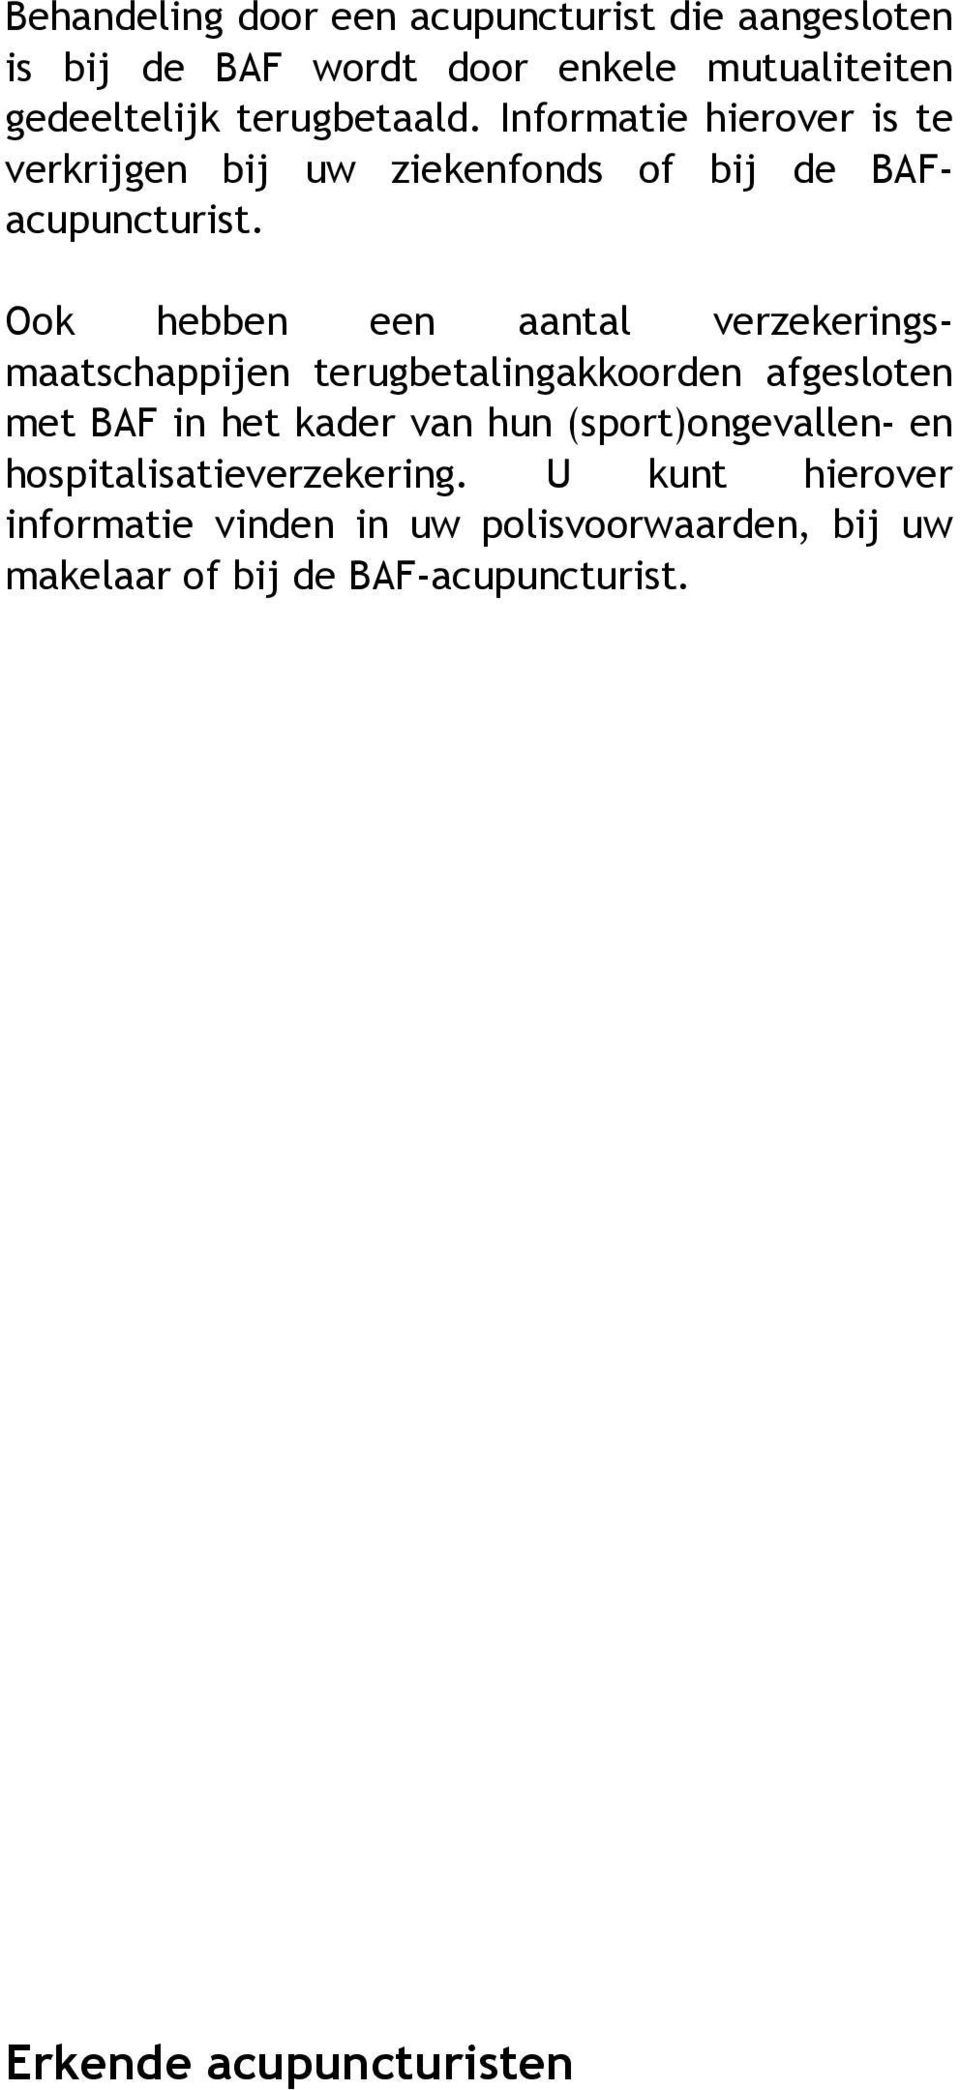 Ook hebben een aantal verzekeringsmaatschappijen terugbetalingakkoorden afgesloten met BAF in het kader van hun